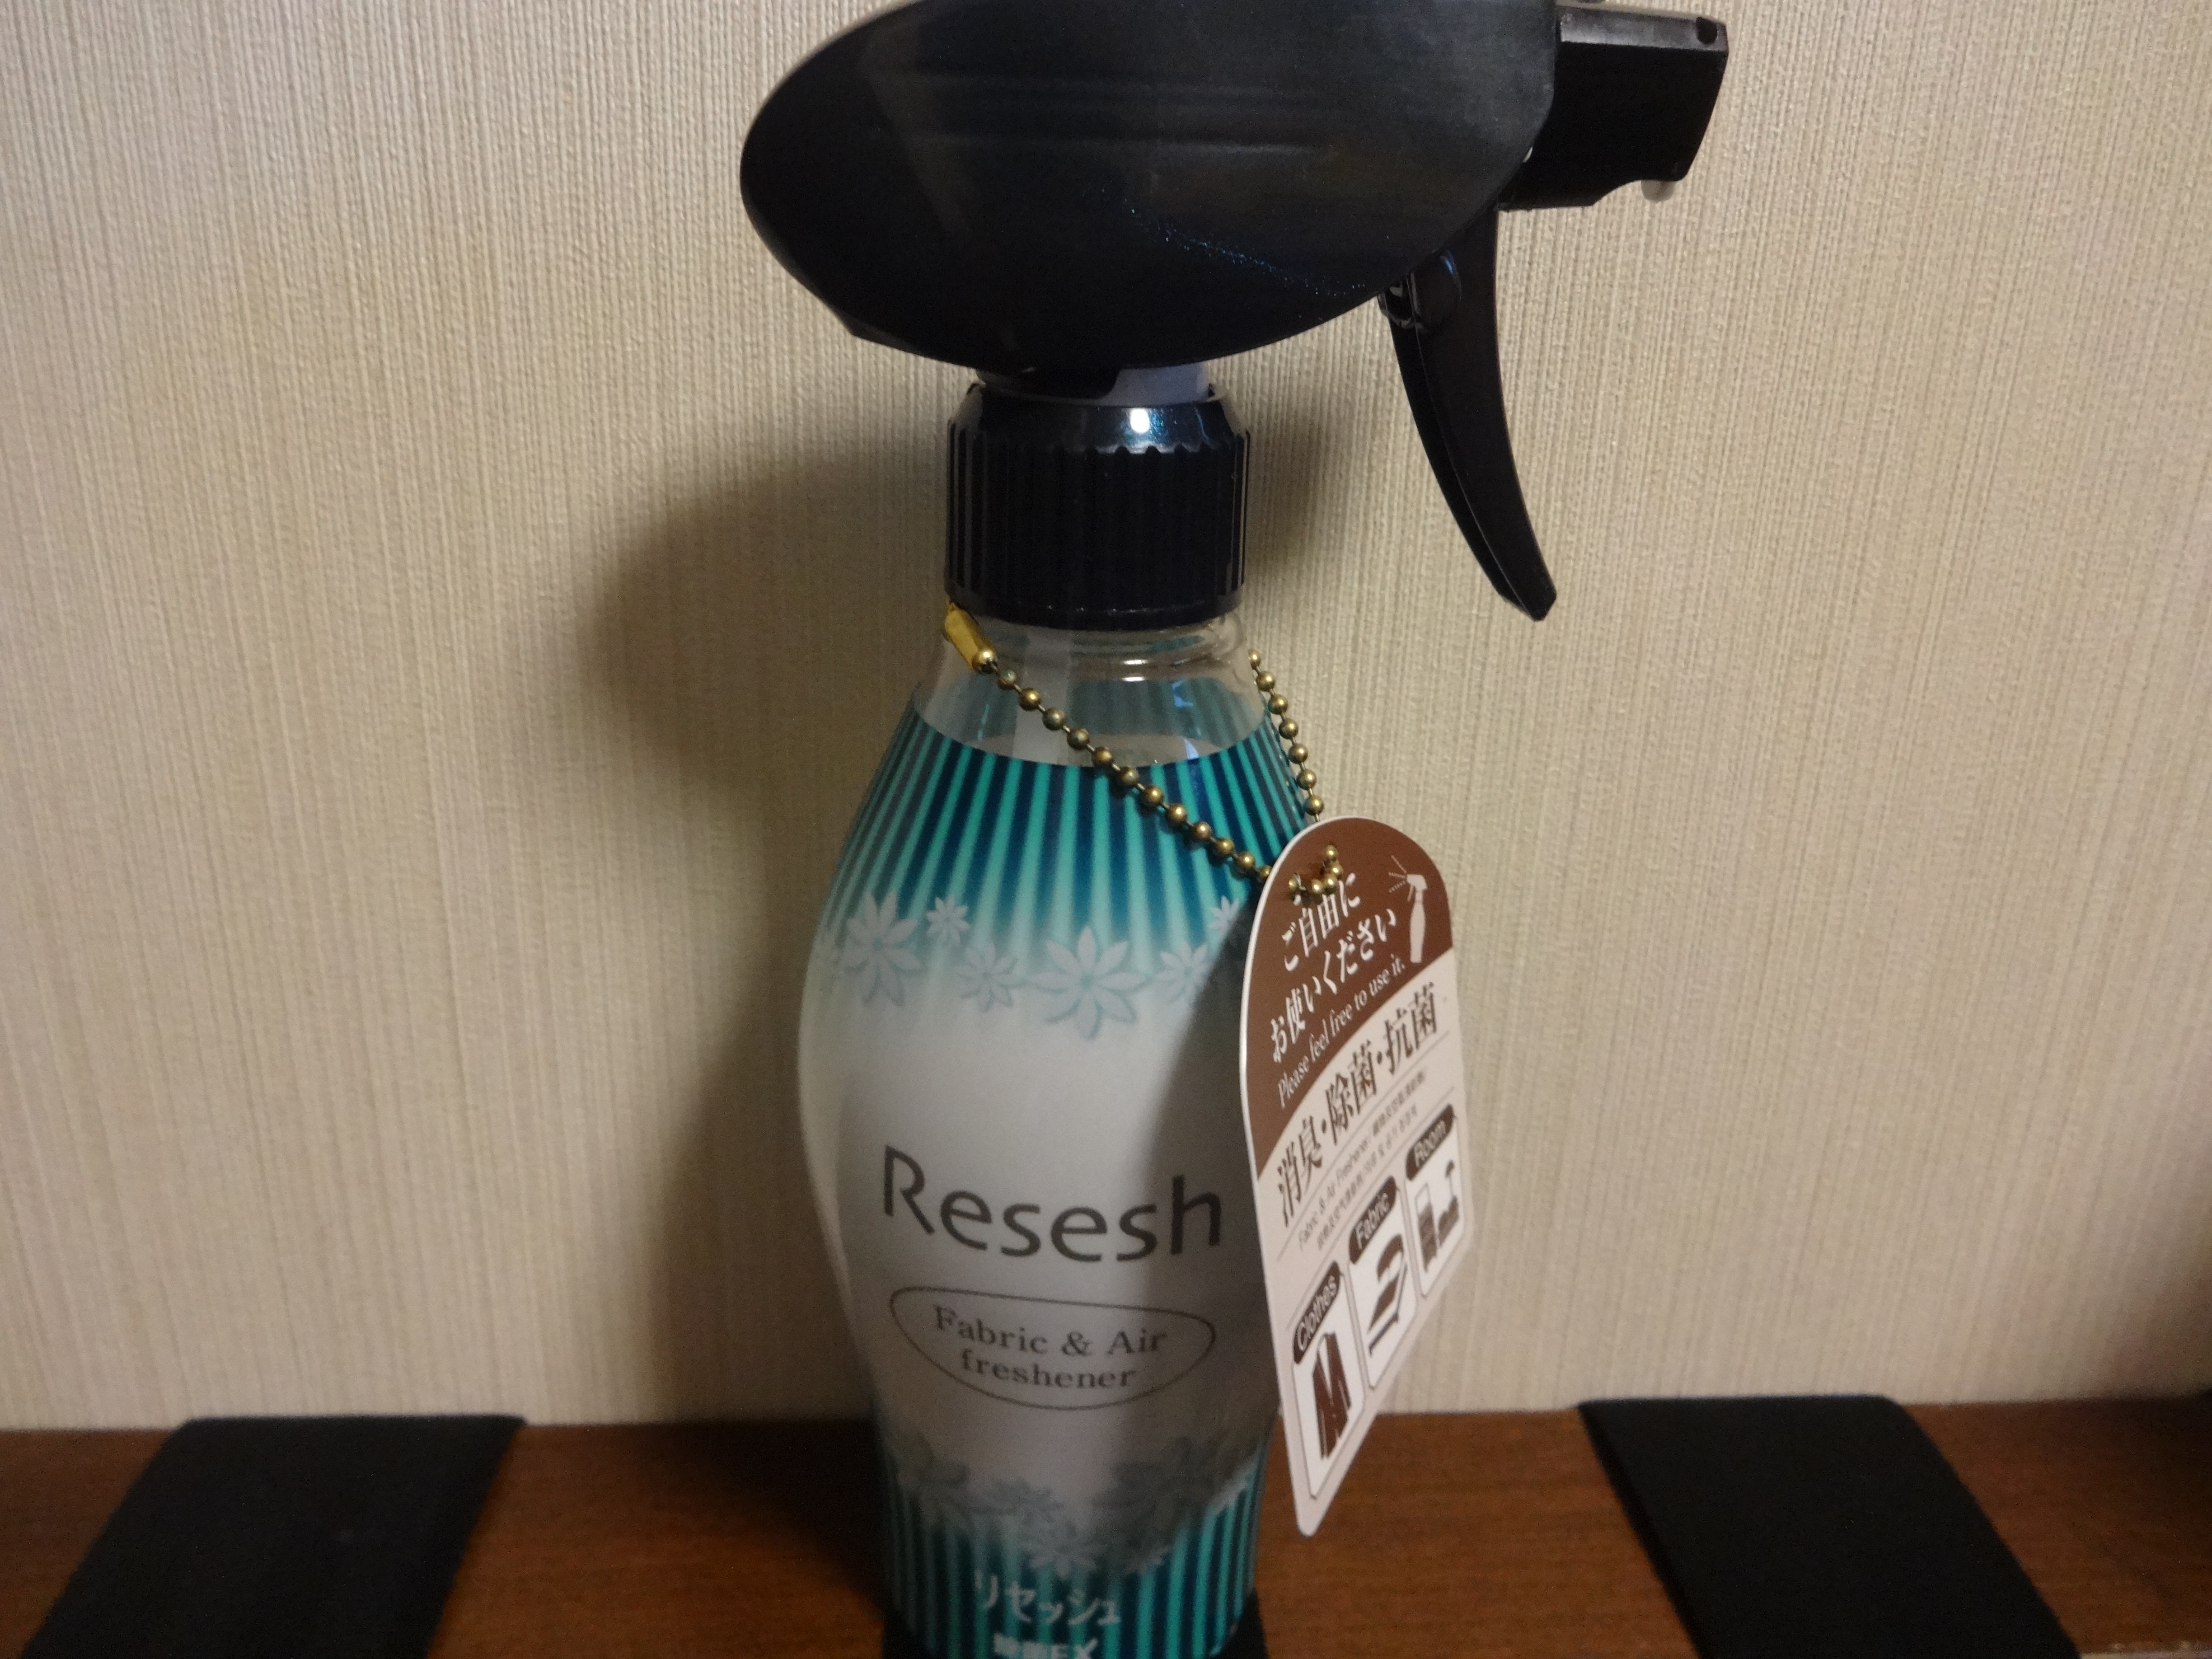 Resesh (kabut deodoran)